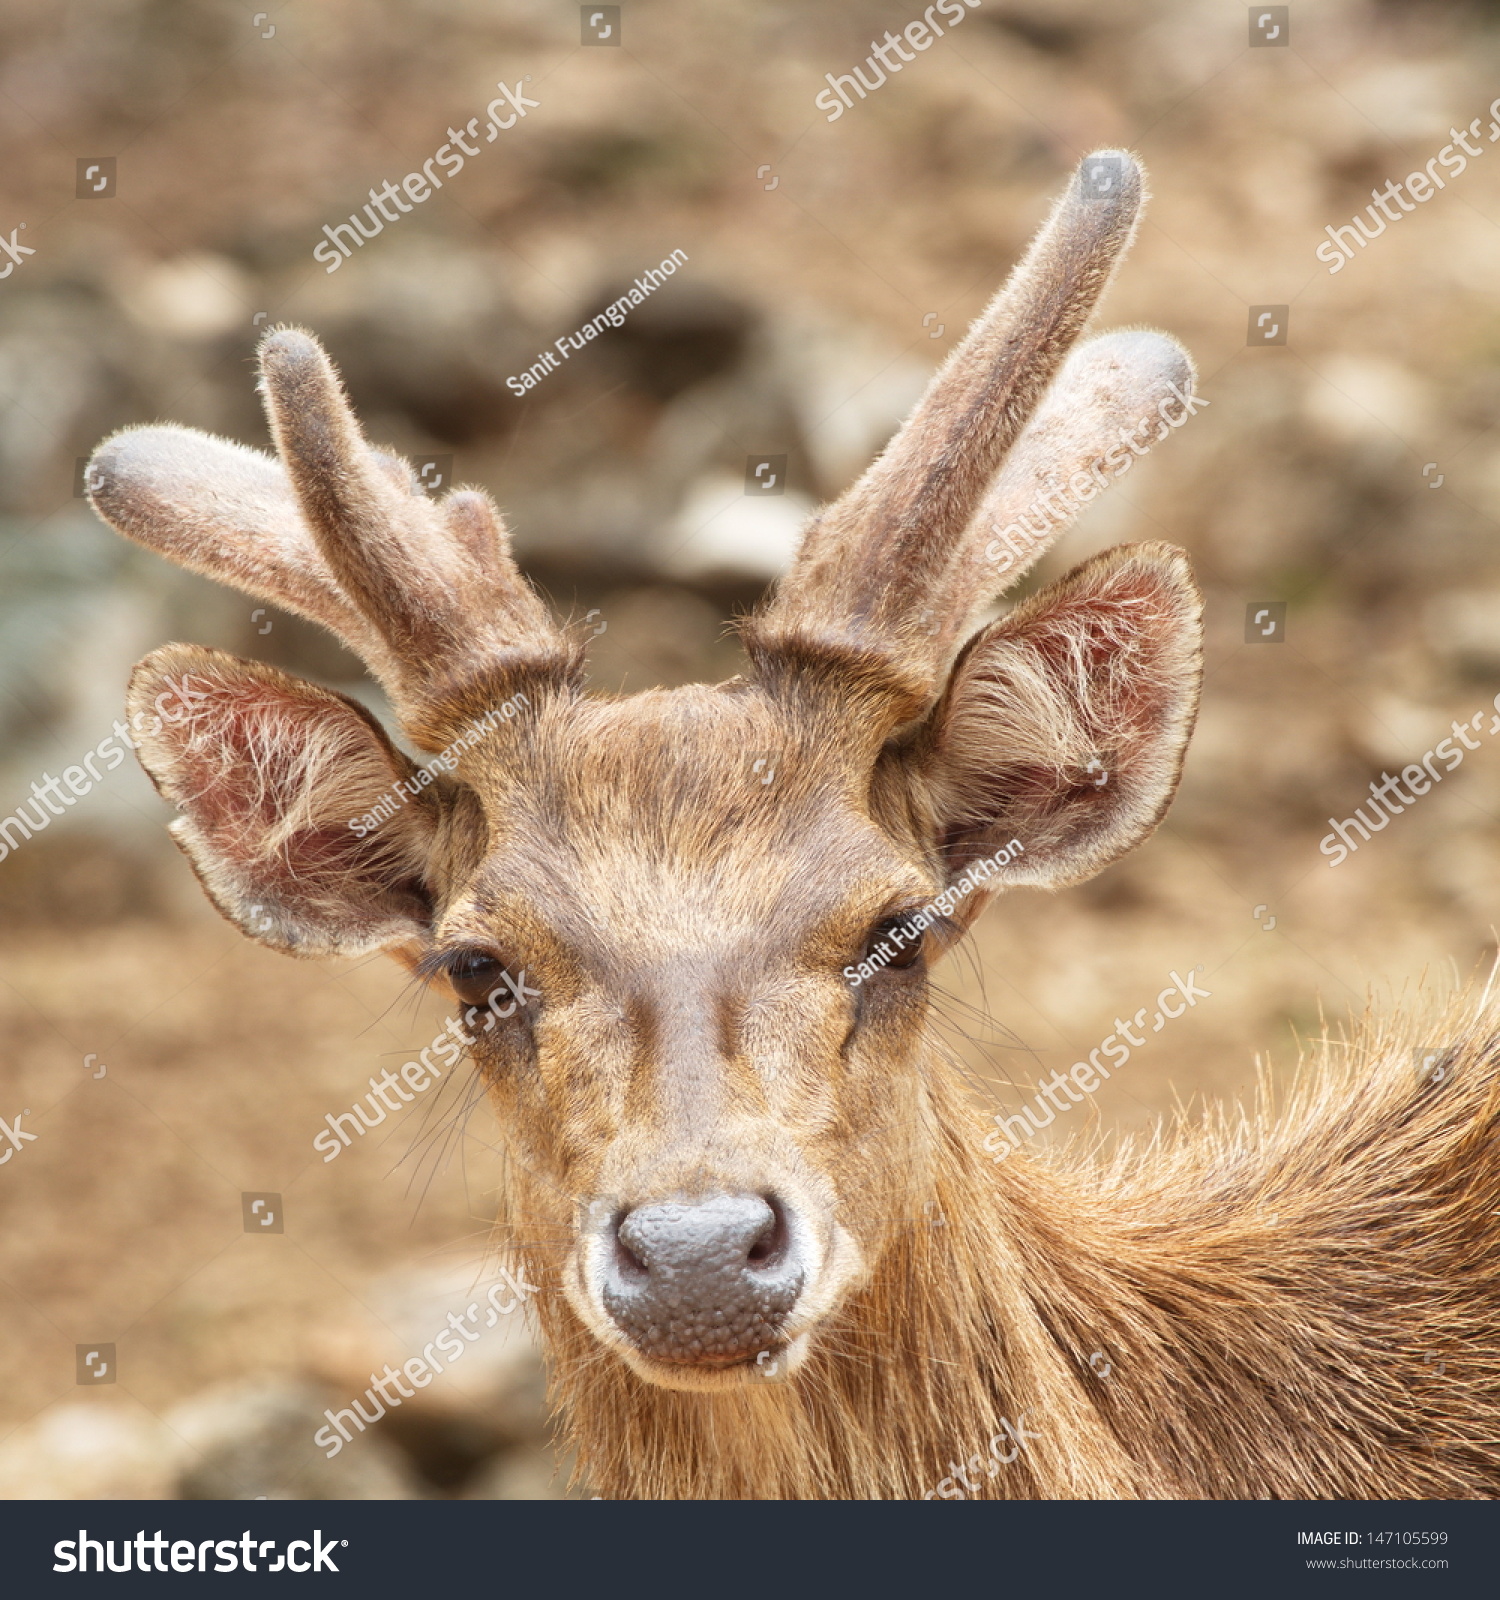 Deer Closeup Stock Photo 147105599 - Shutterstock